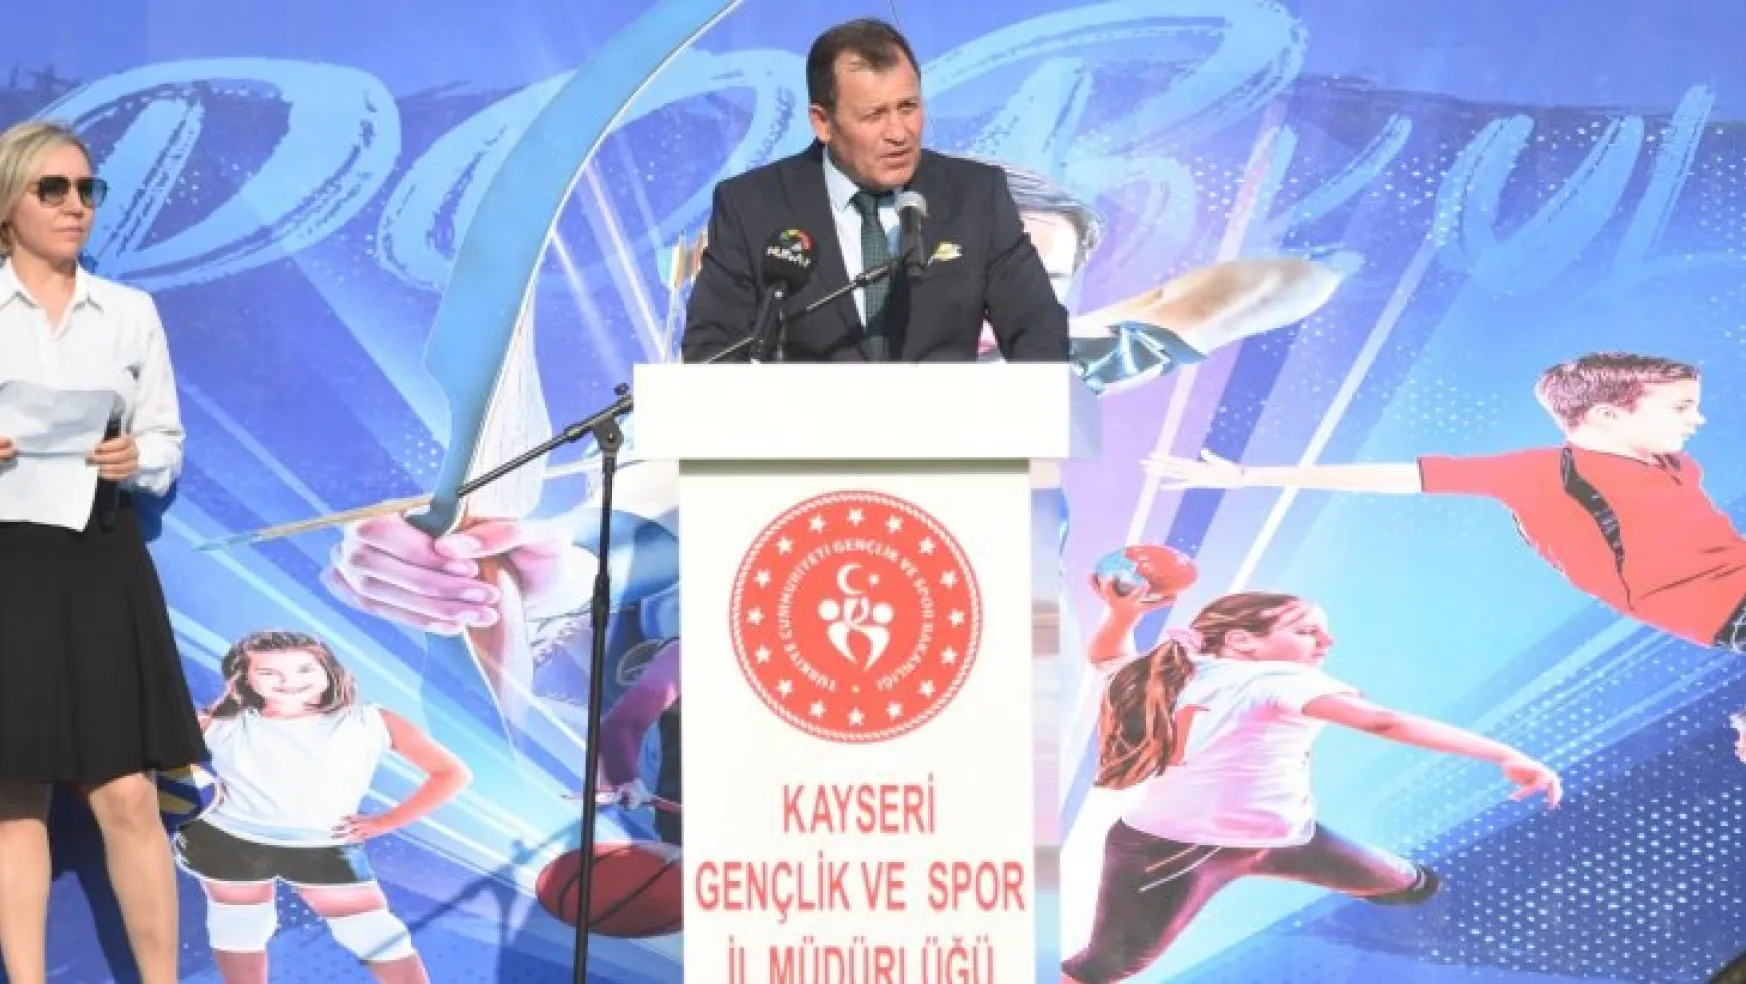 Ali İhsan Kabakcı 'Kayseri'de binlerce gence yüzme öğreteceğiz'